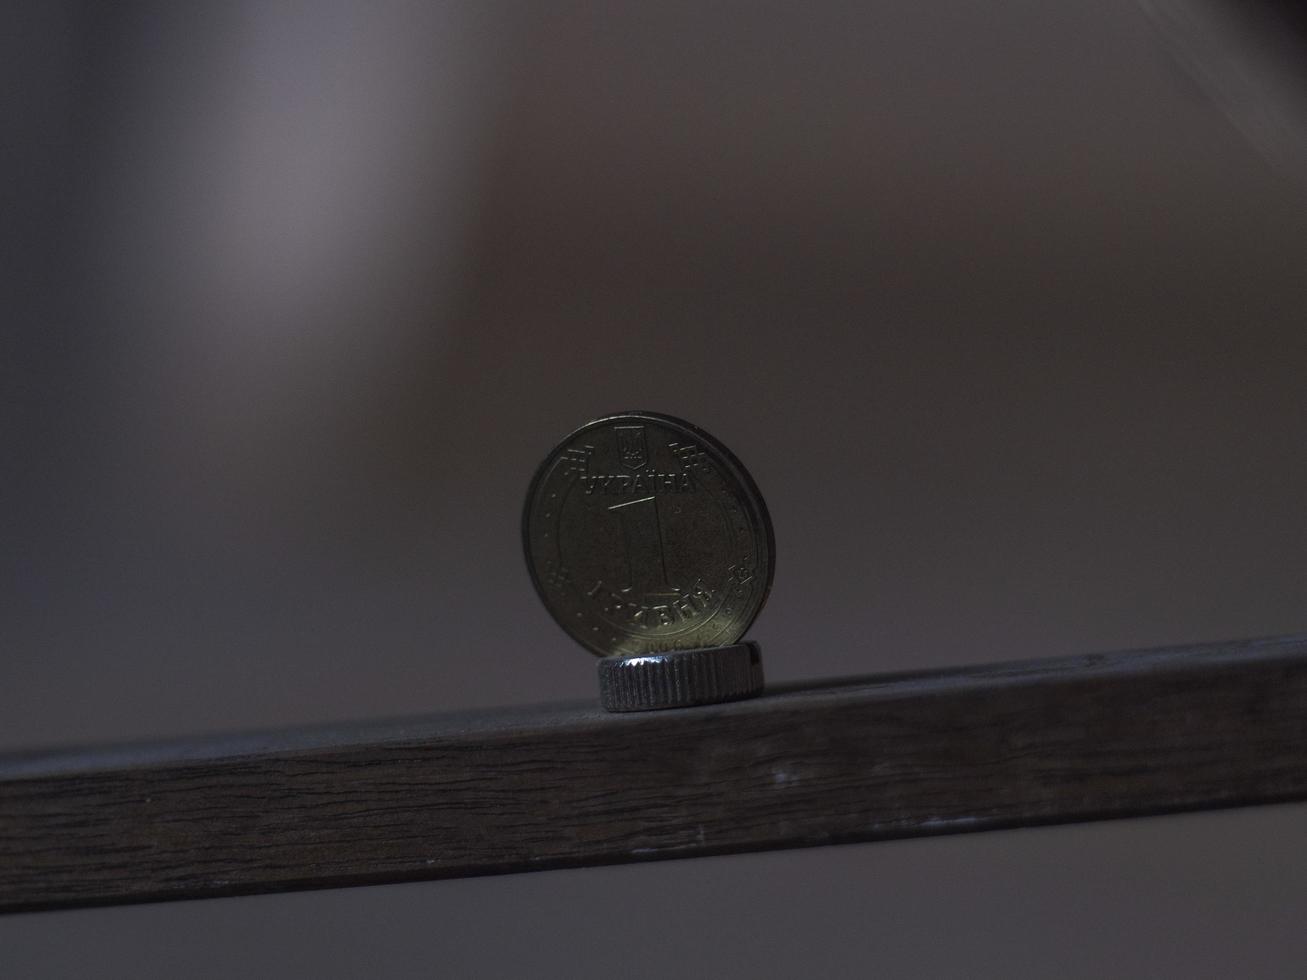 metalliskt ukrainskt mynt på en träplanka. ukrainsk hryvnian mynt foto